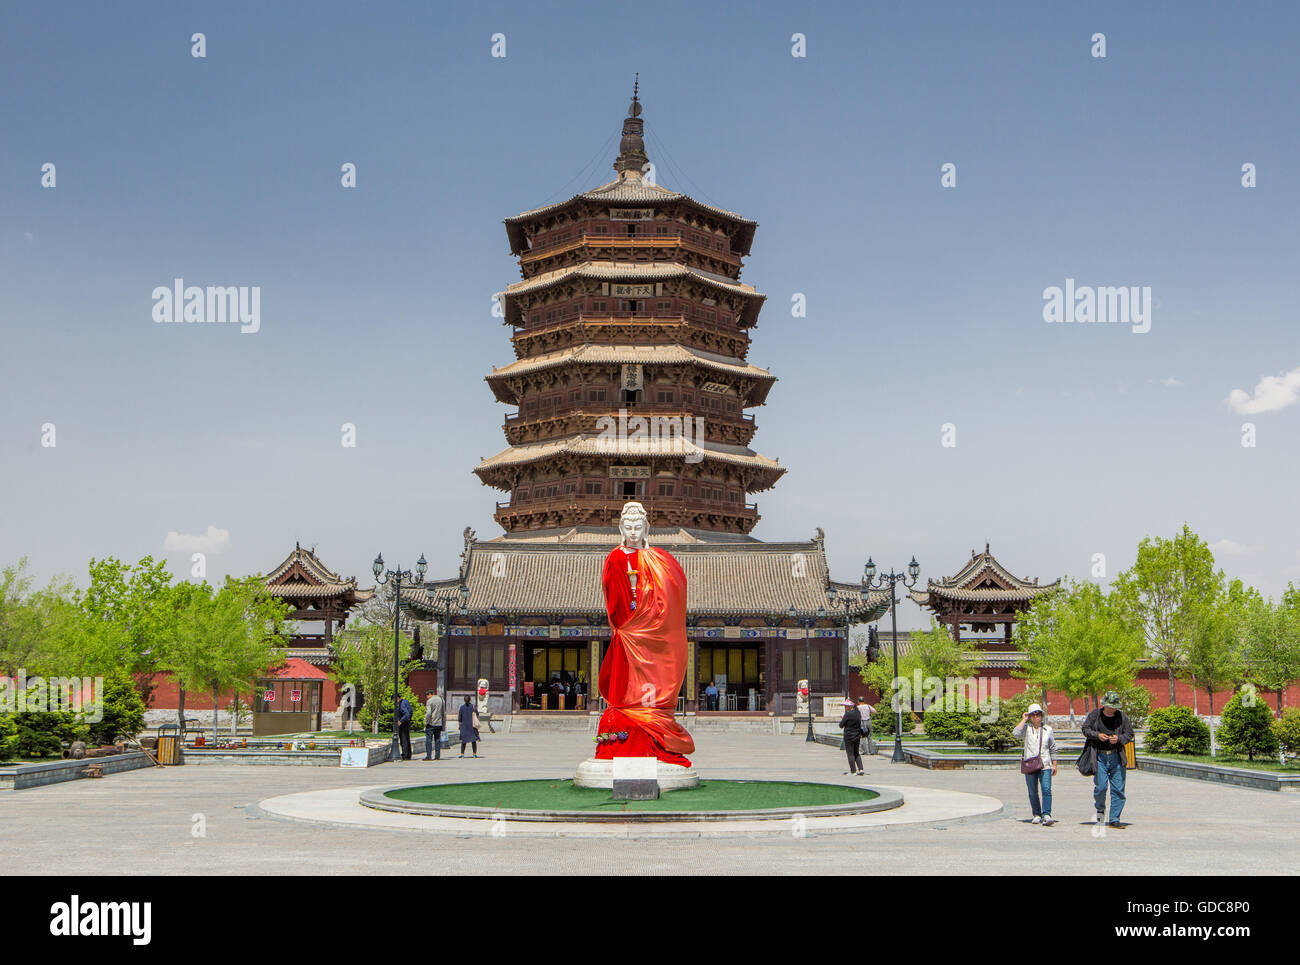 La Chine, Province du Shanxi, Xinanjiaocun,Ville,pagode en bois de Yingxian Temple Fogong Banque D'Images